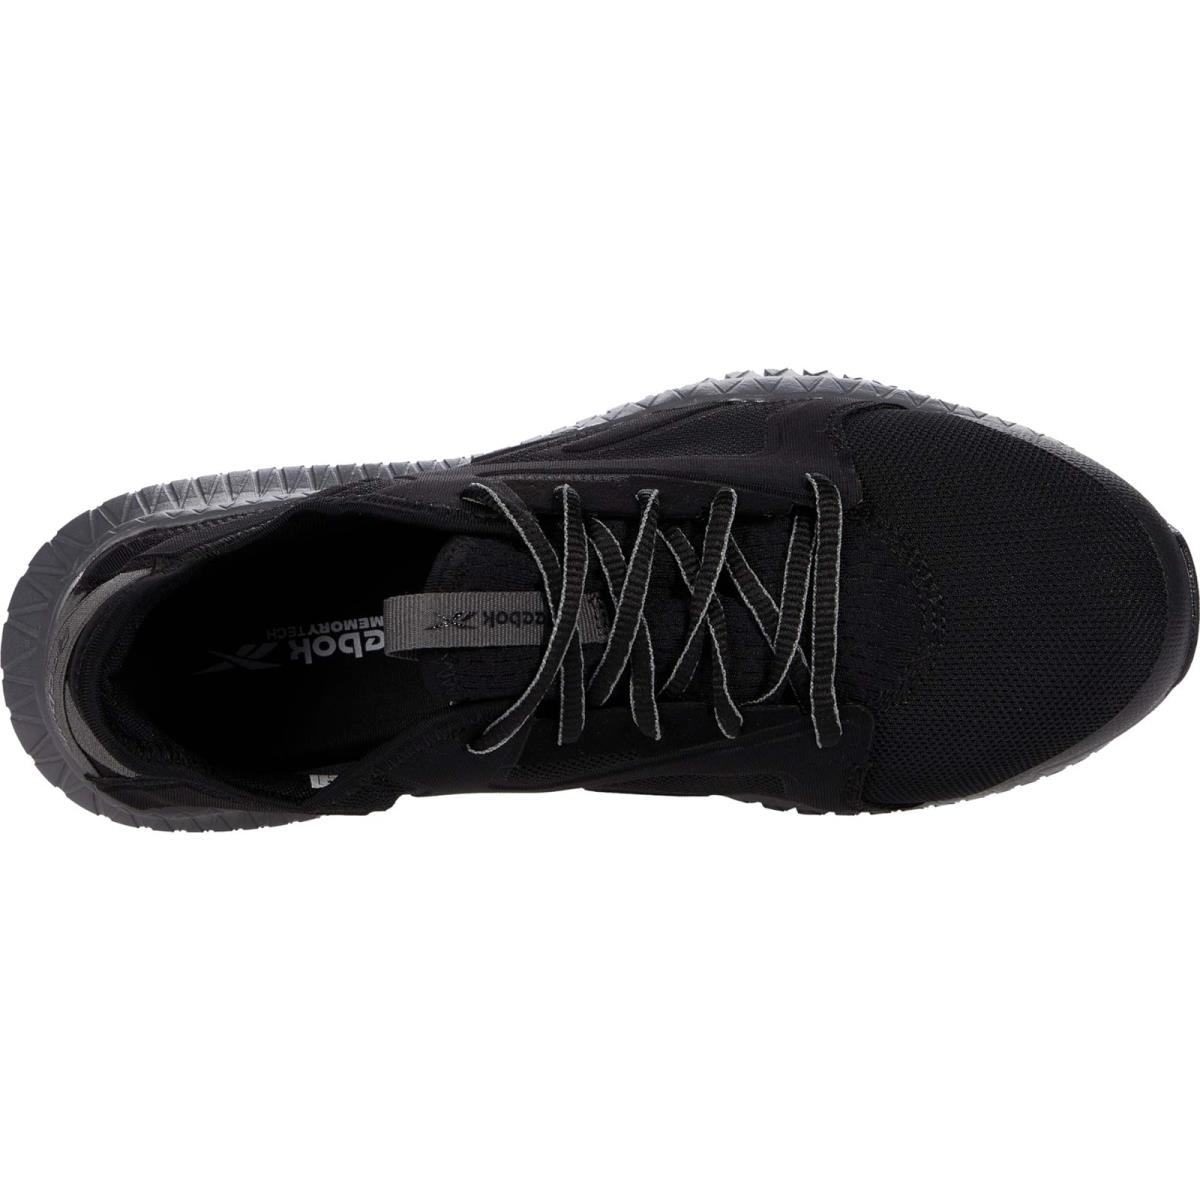 Reebok shoes  - Black/Grey 0